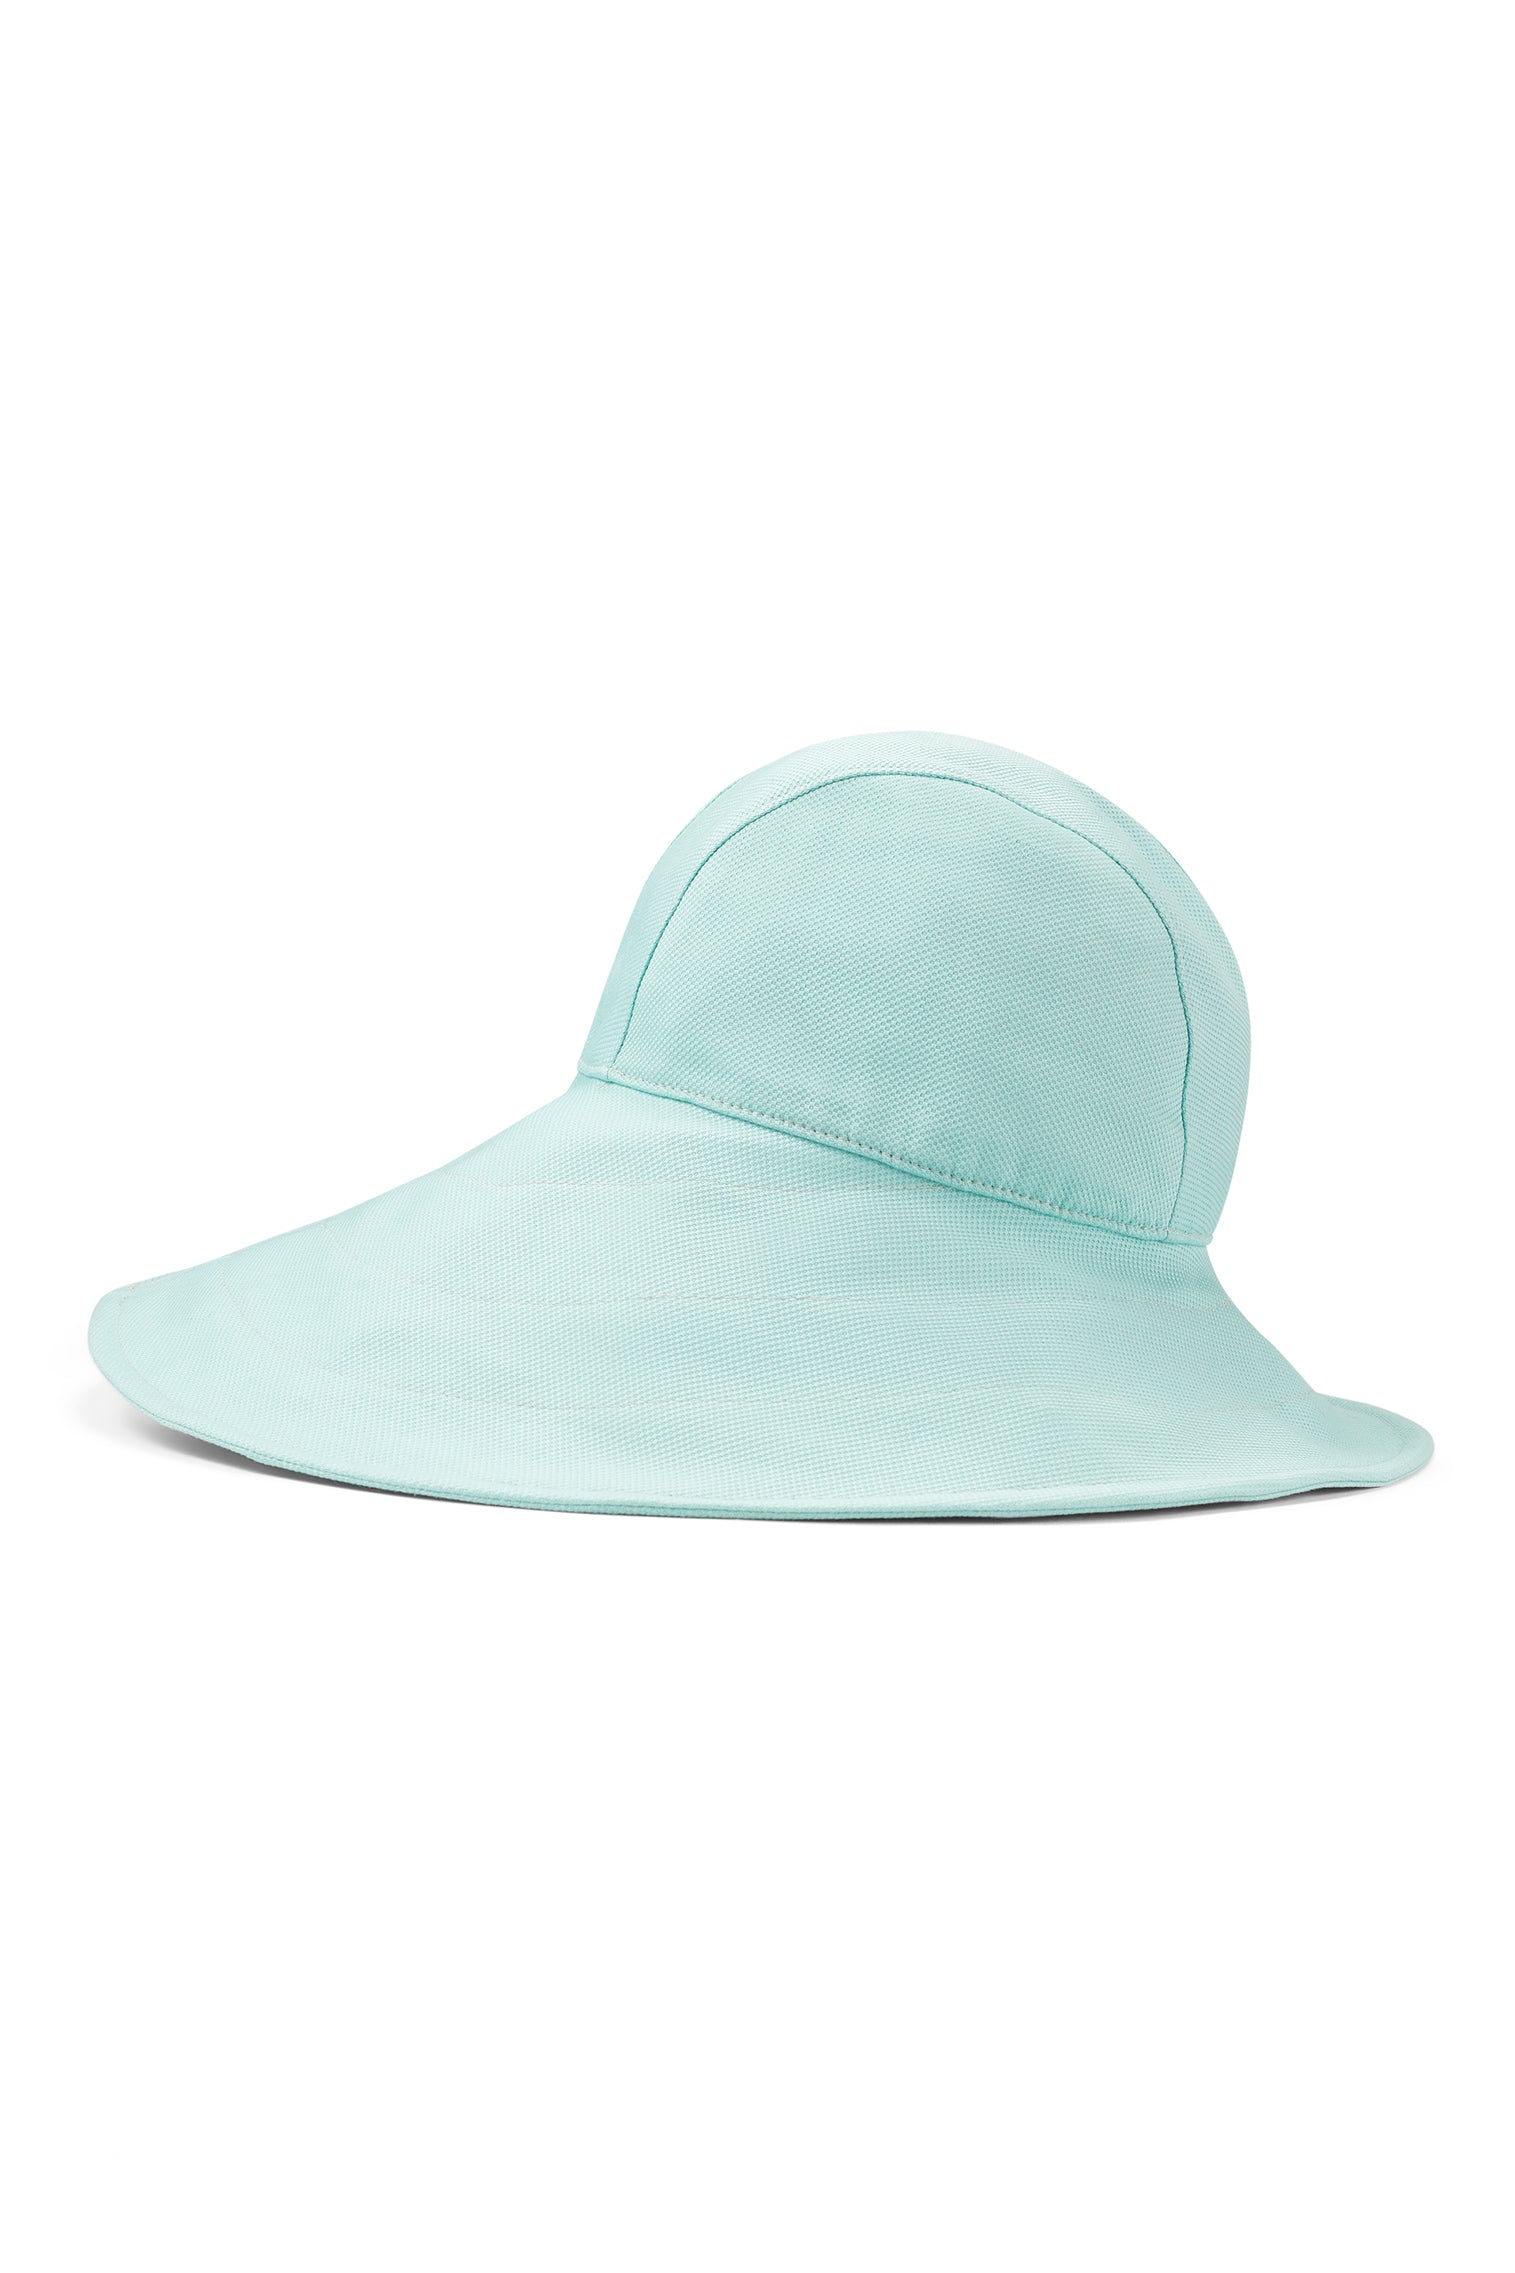 Elowyn Sou'Wester Sun Hat - Products - Lock & Co. Hatters London UK